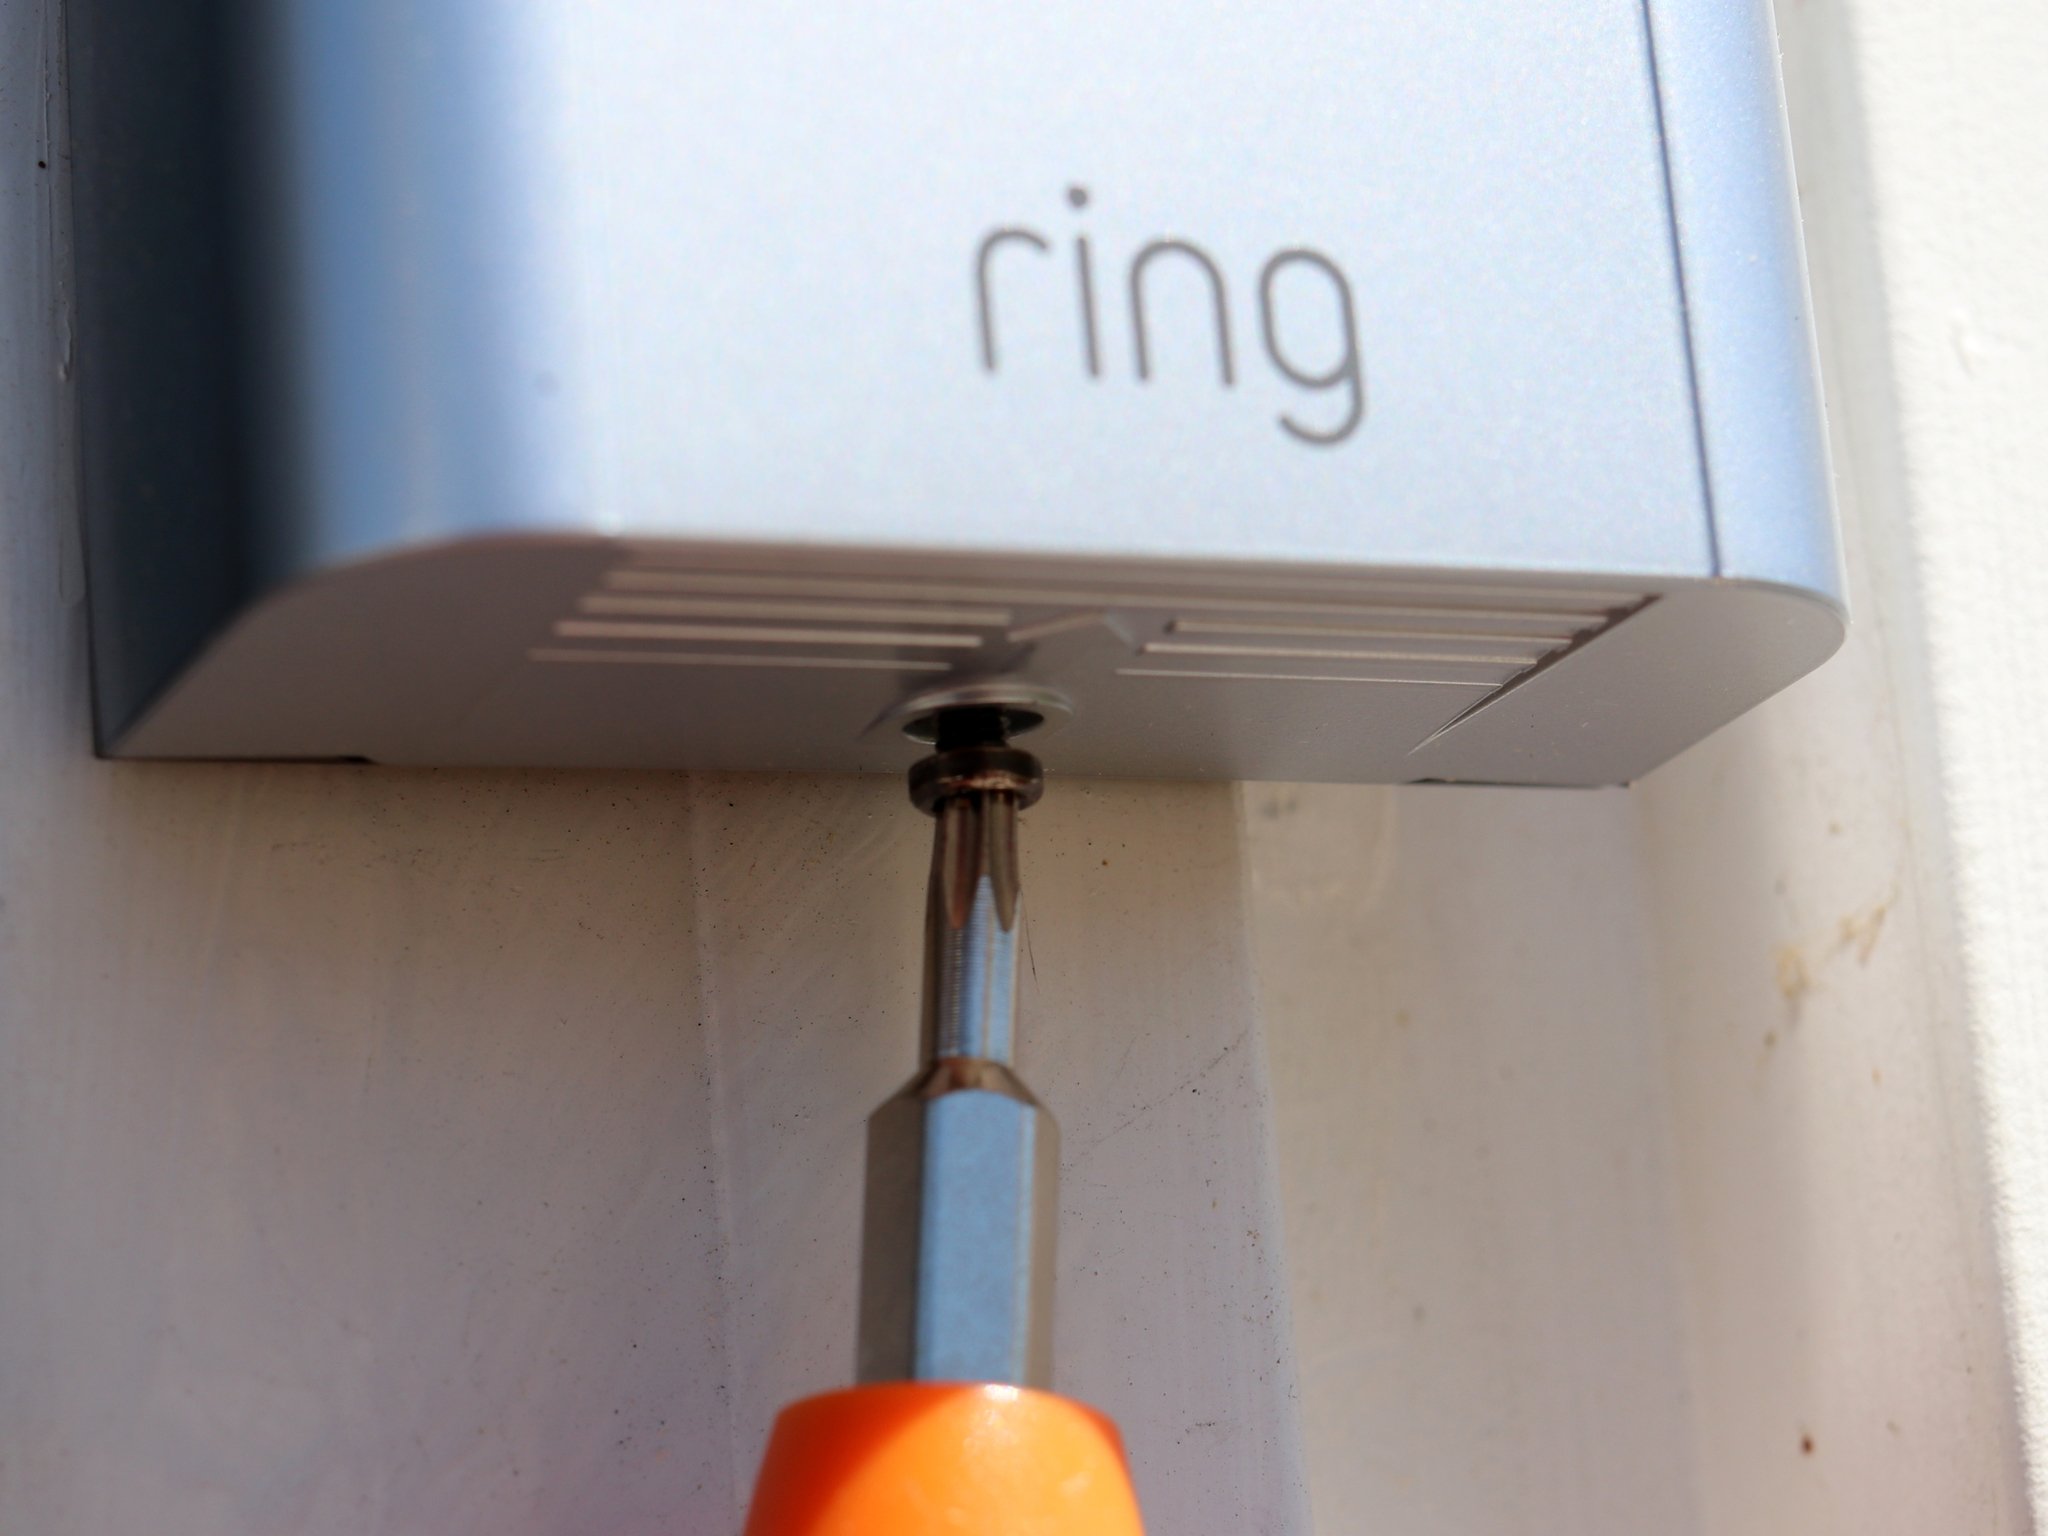 Ring Video Doorbell 3 Plus Screwdriver